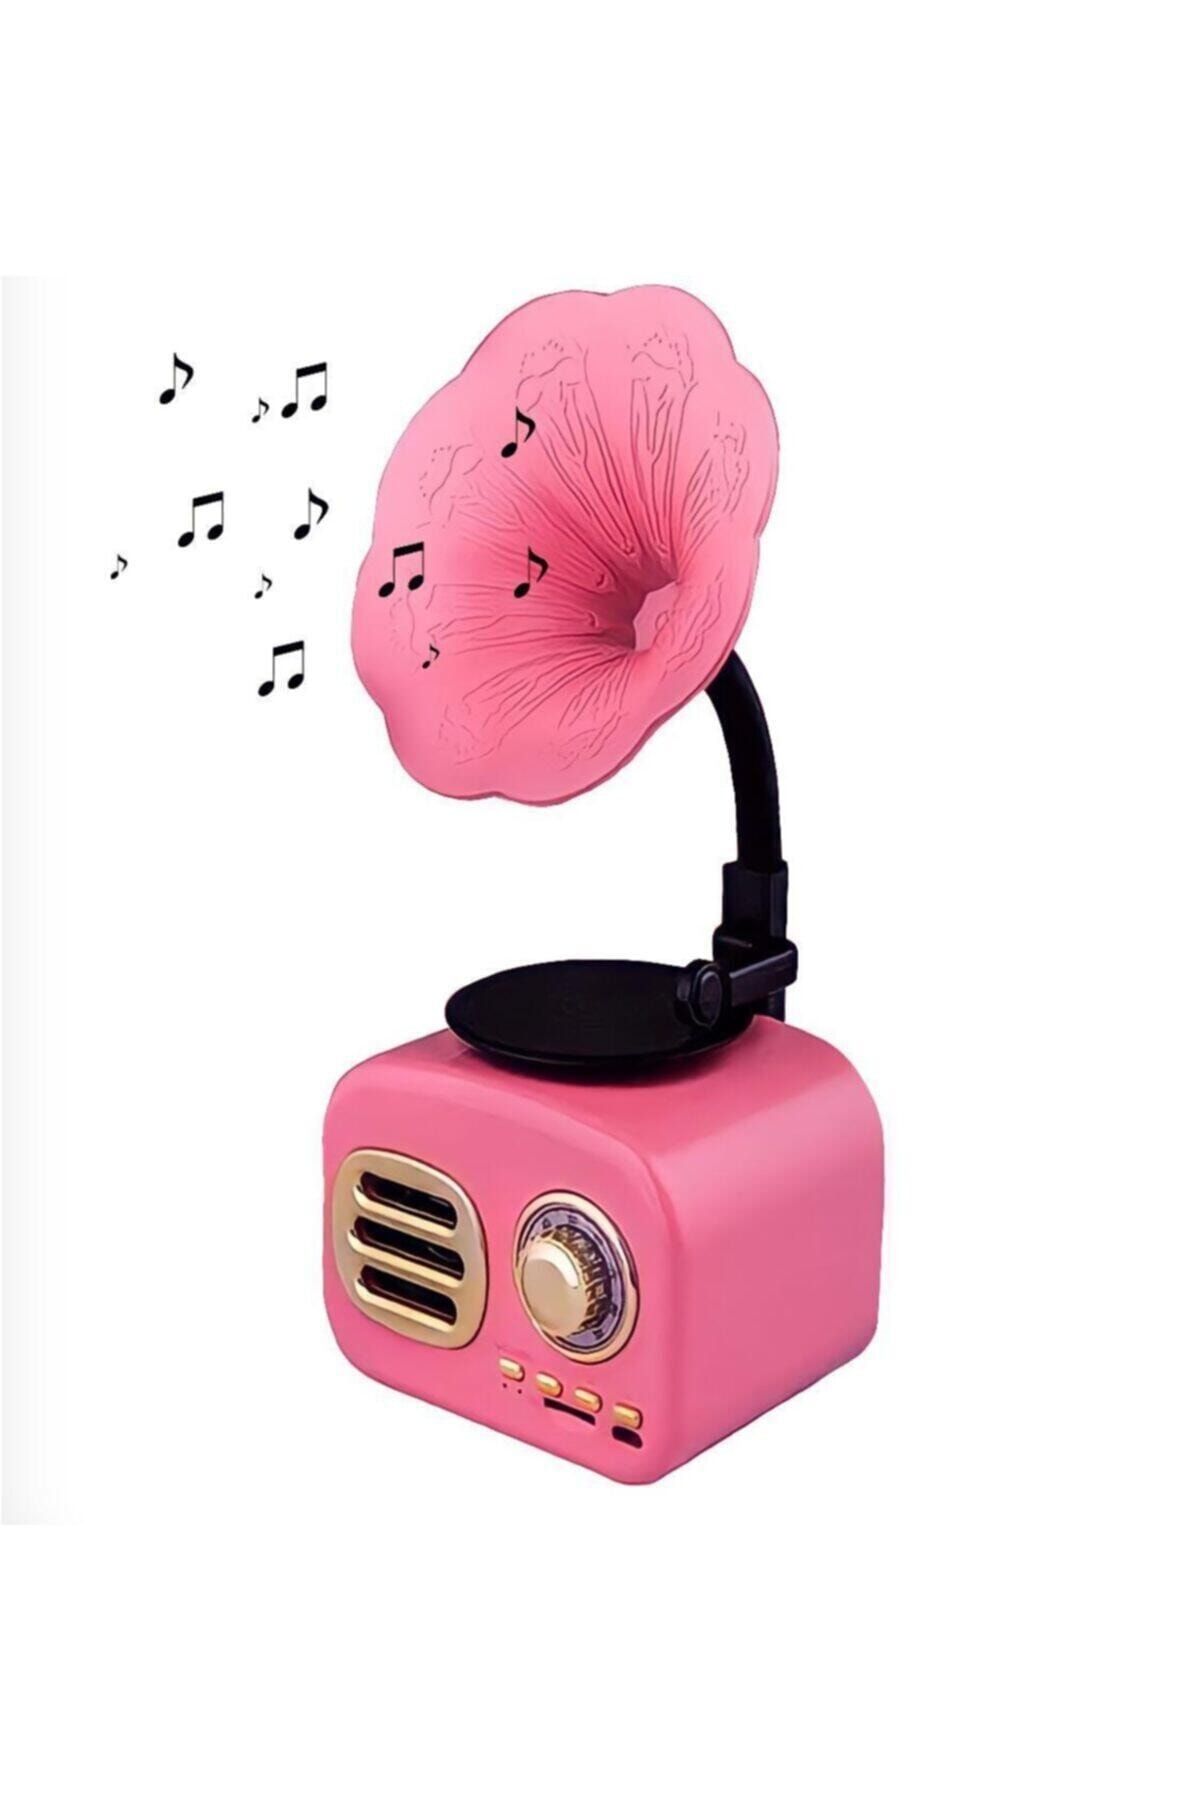 NETAPLUS Pembe Nostaljik Gramofon Taşınabilir Bluetooth Hoparlör Mini Radyo Müzik Çalar Kutusu